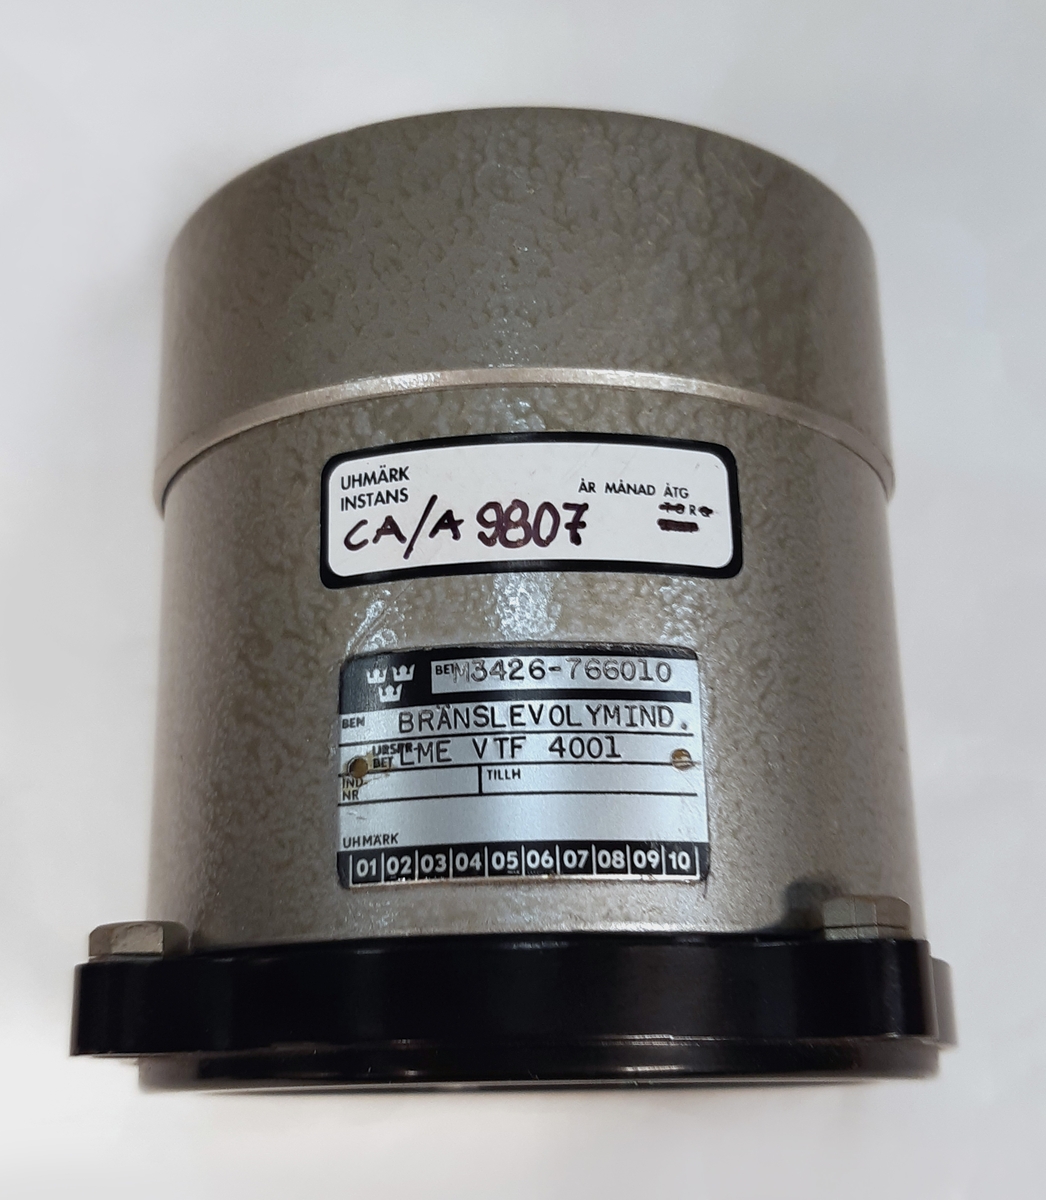 Bränslevolymindikator VTF 4001, för Fpl 32. Graderad 1-15, samt märkt: "x100L".